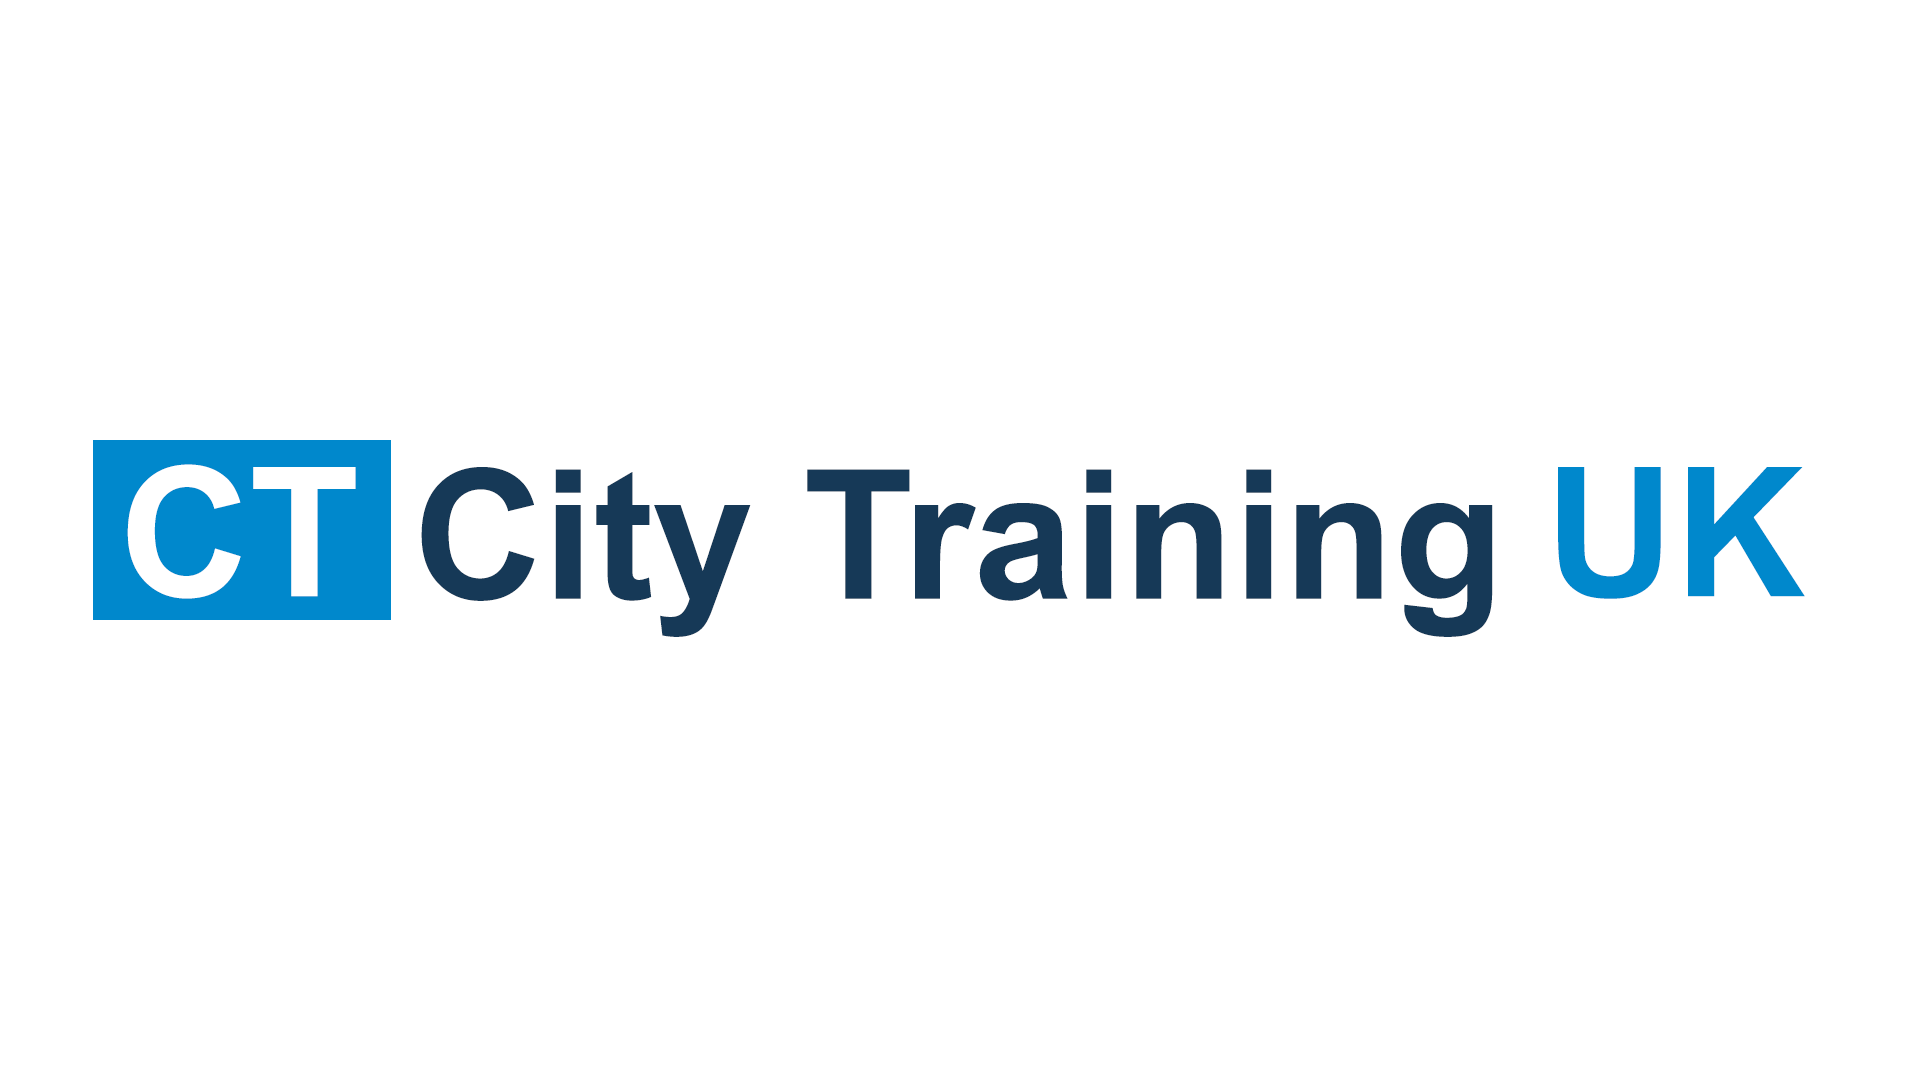 City Training UK